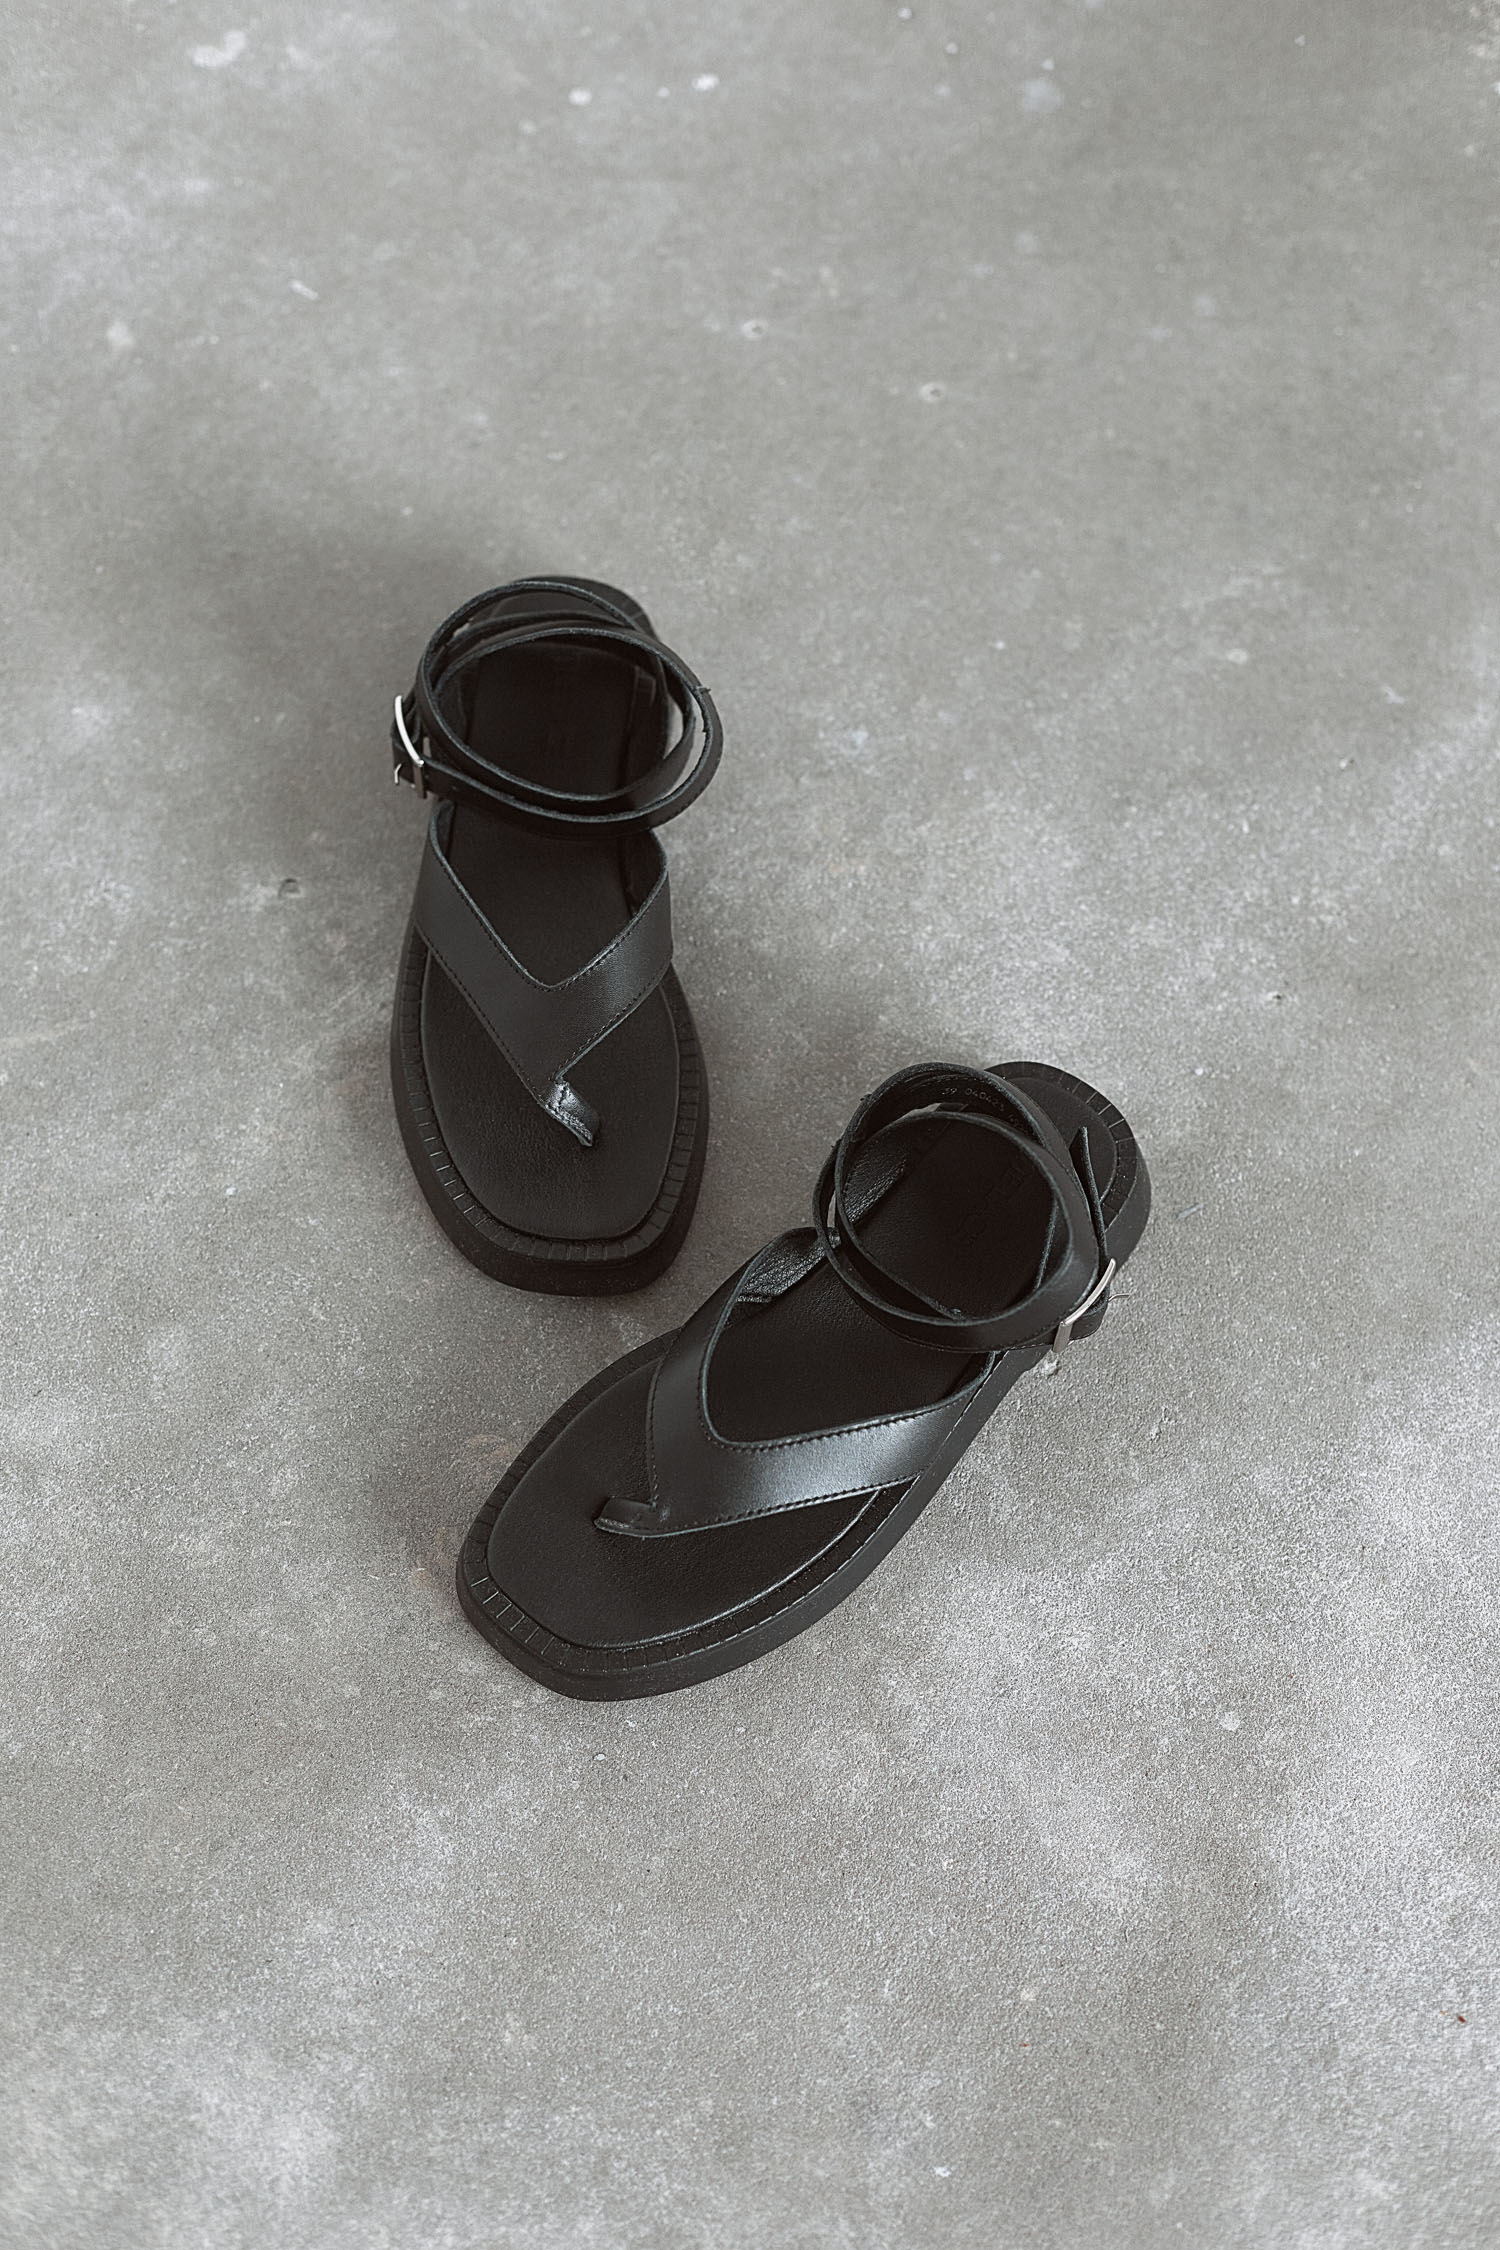 Шкіряні сандалі на ремені чорні - THE LACE фото 158849